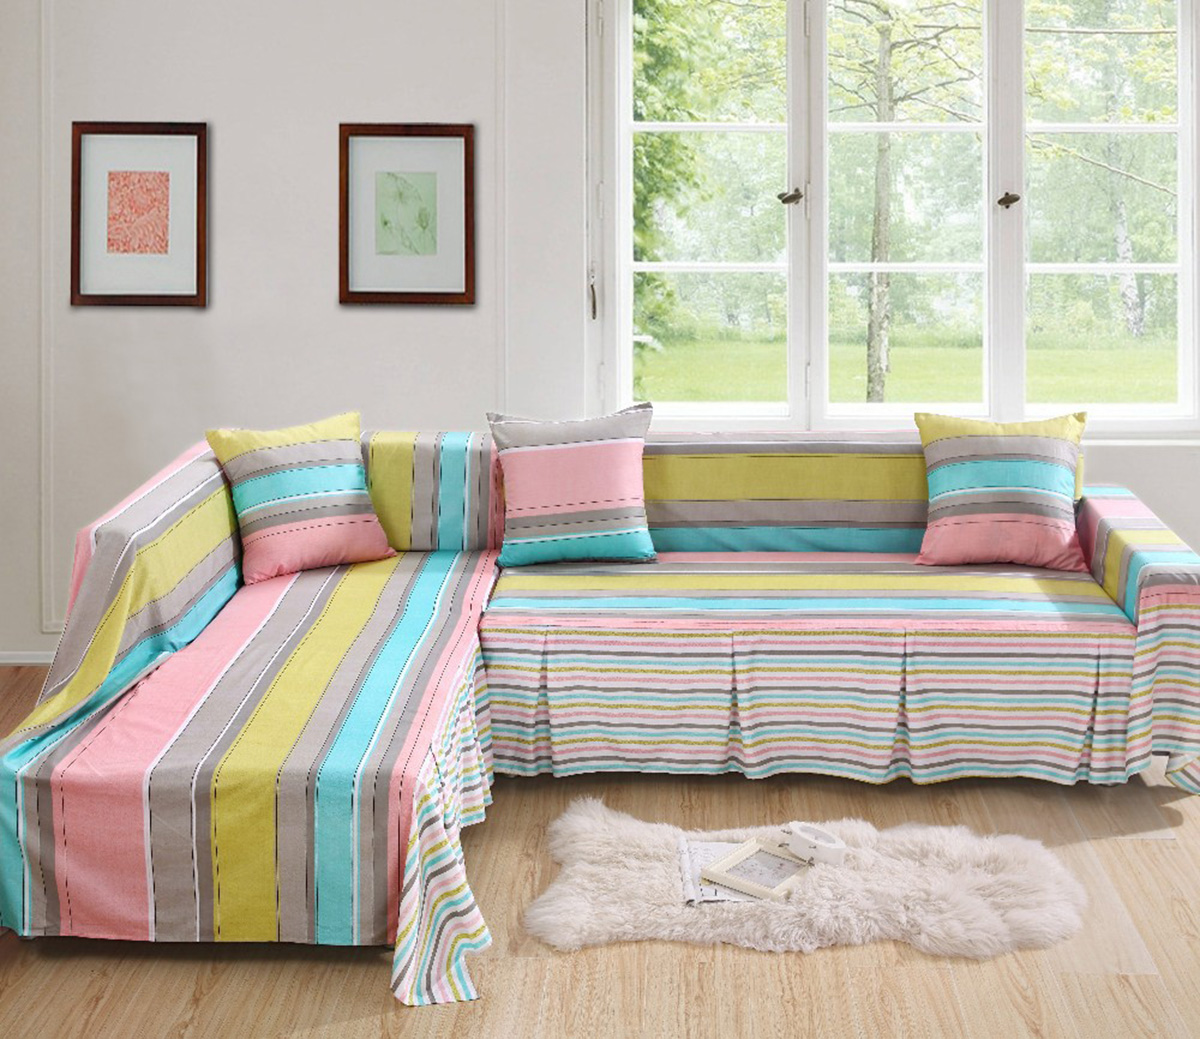 7 способов красиво застелить угловой диван пледом - магазин мебели Dommino